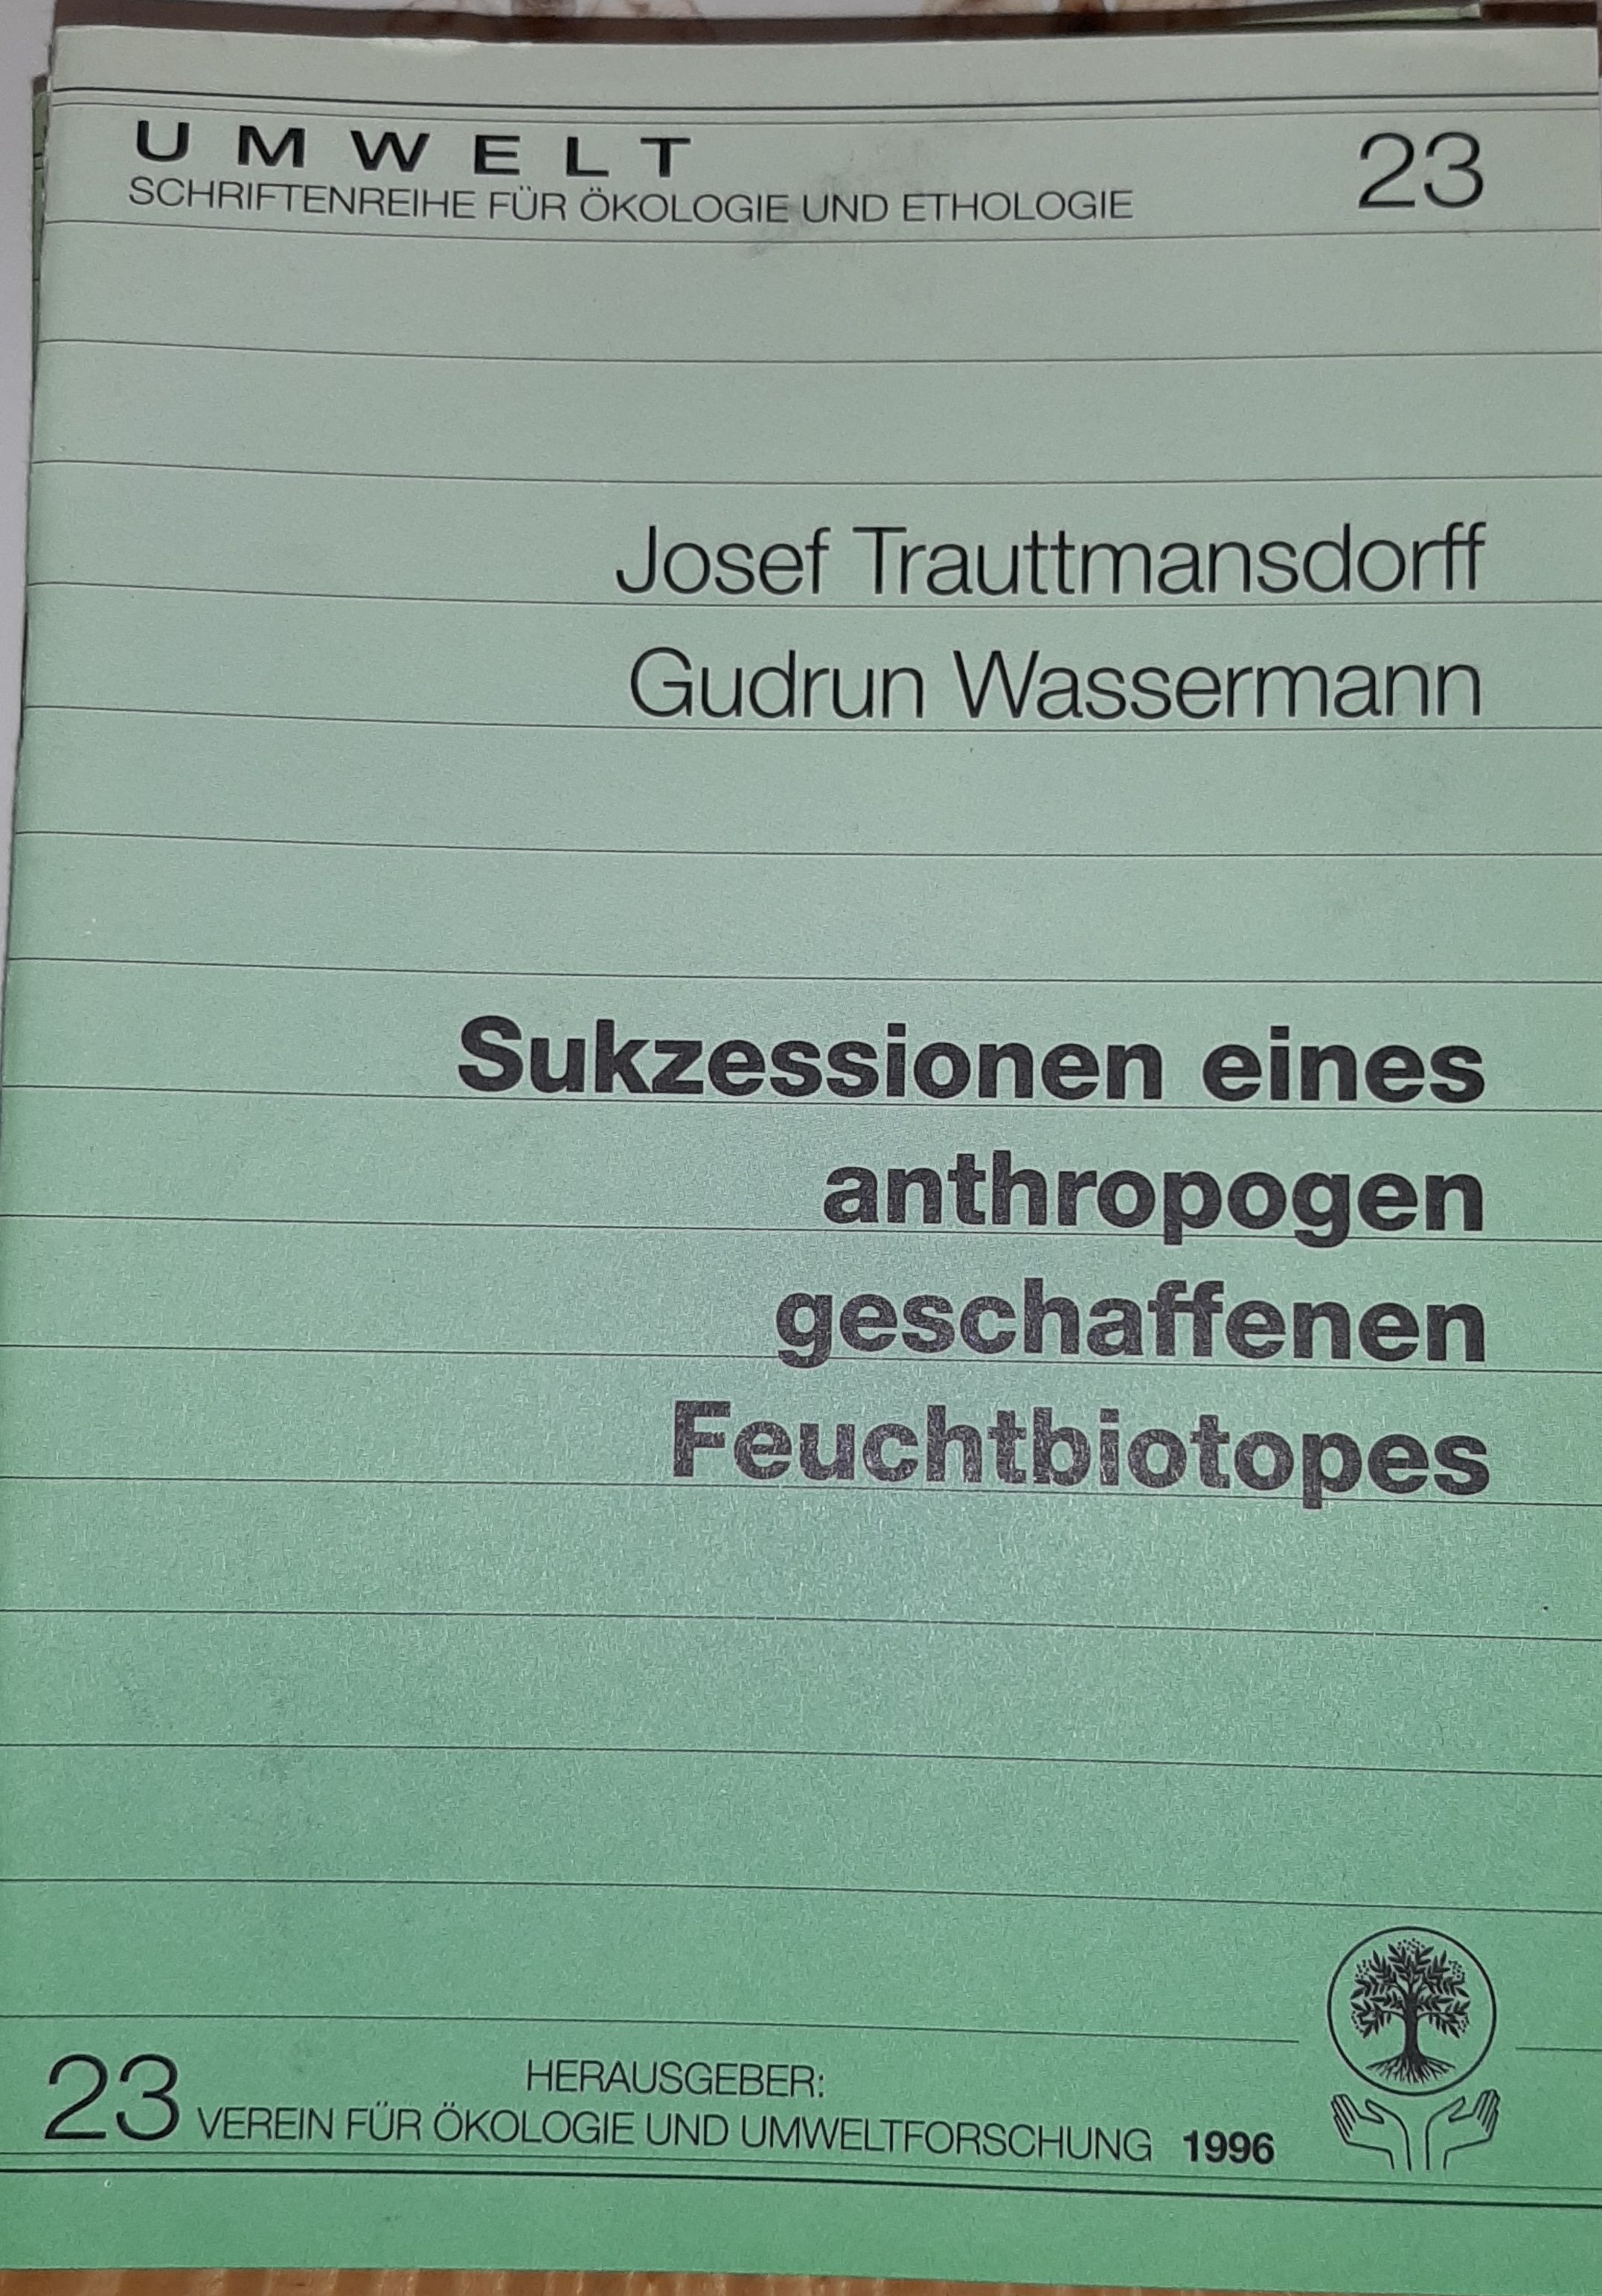 Josef Trauttmansdorff, Gudrun Wassermann: Sukzessionen eines anthropogen geschaffenen Feuchtbiotopes. (Rippl-Rónai Múzeum RR-F)